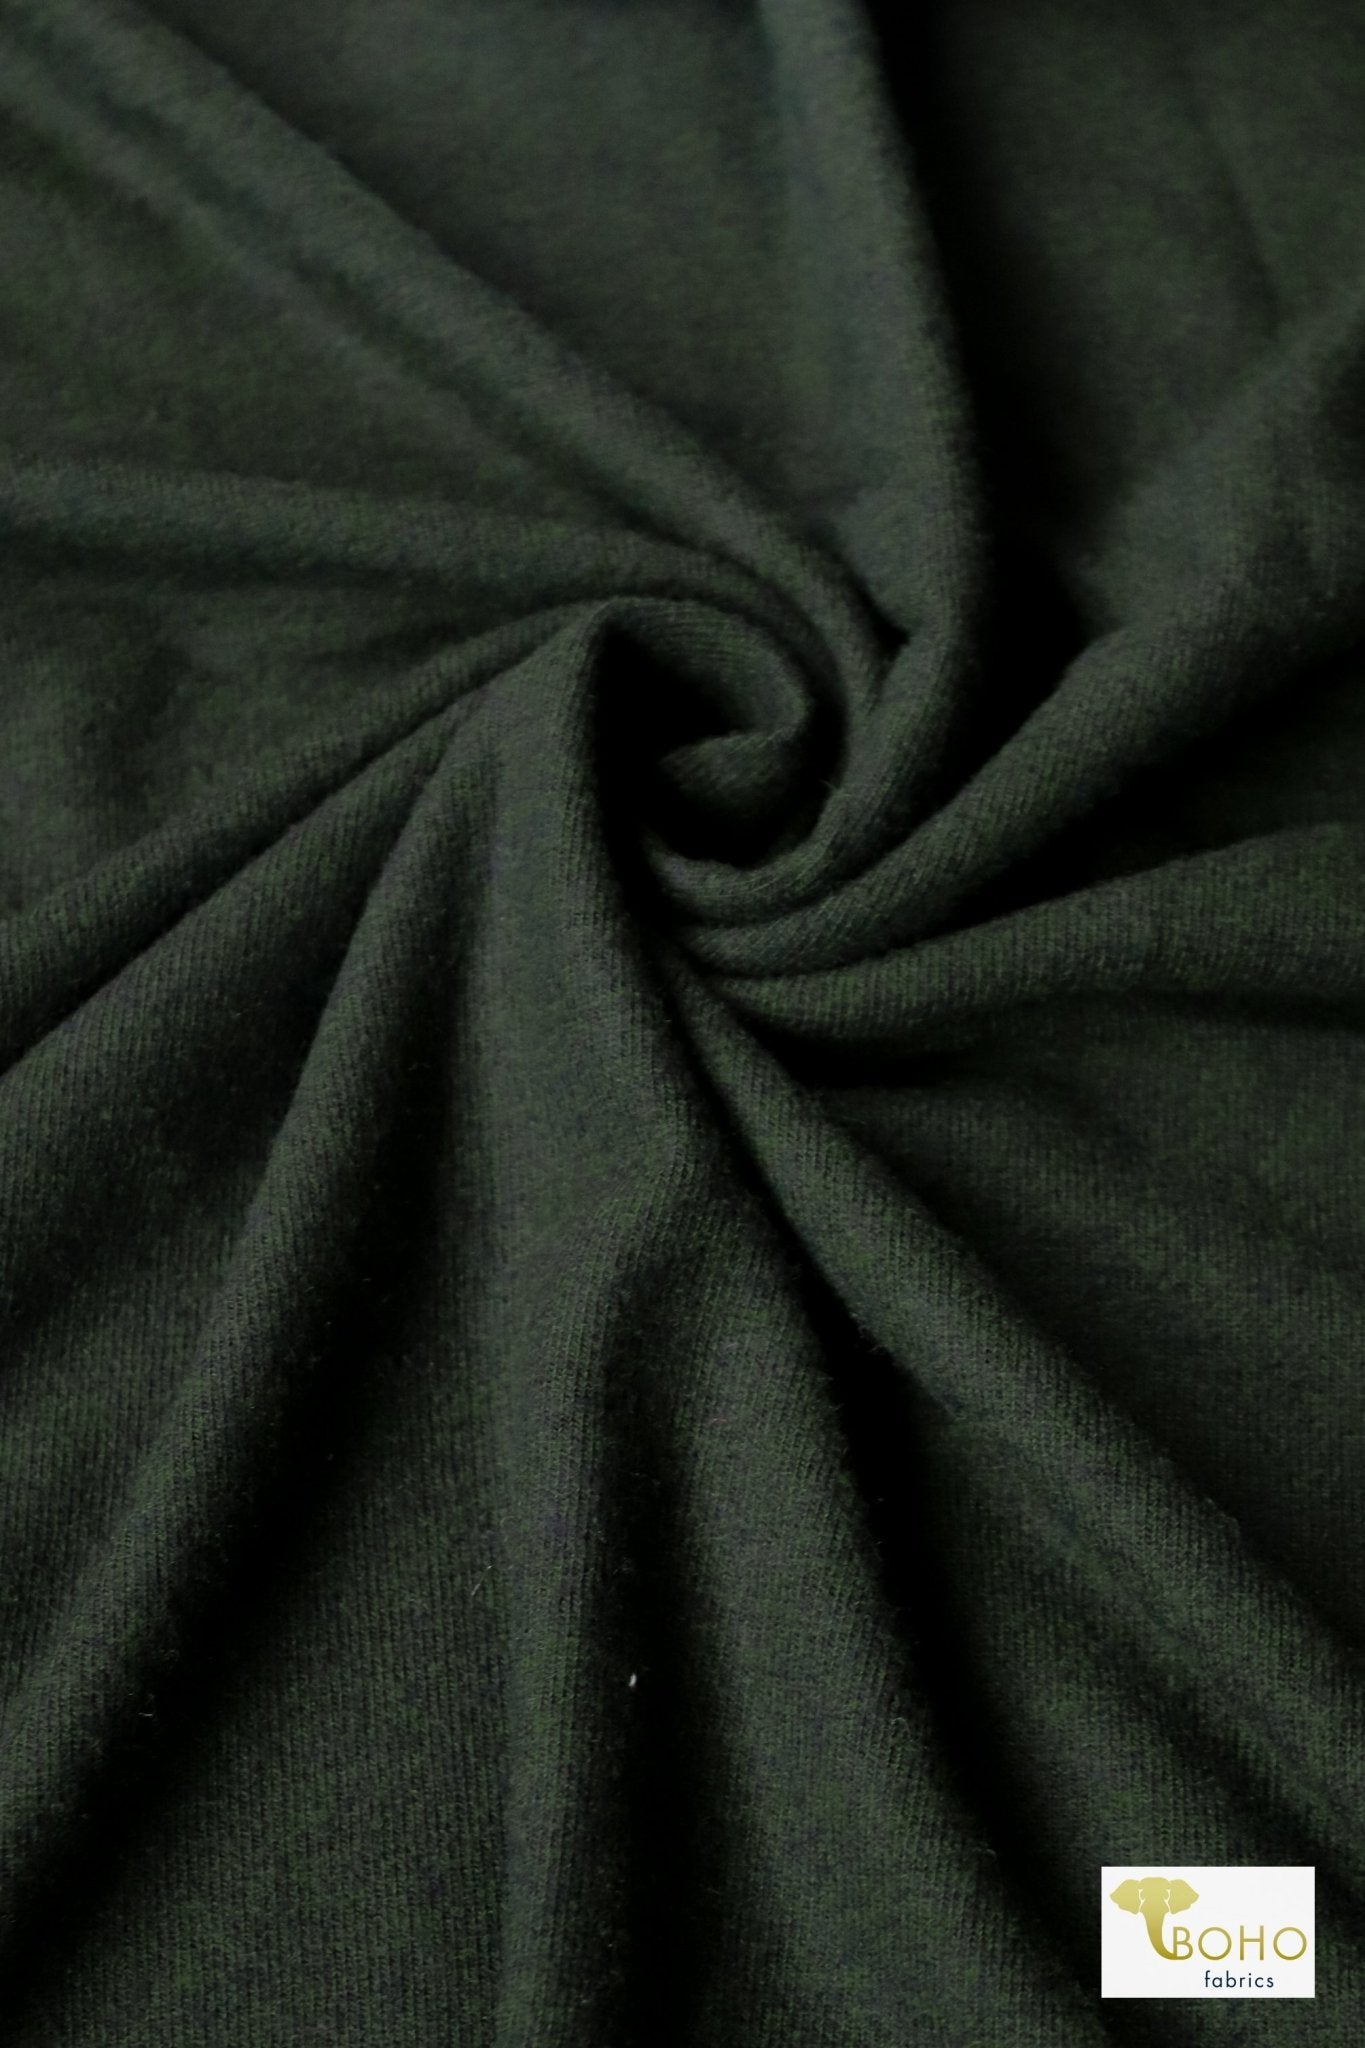 Sycamore Green, Jersey Knit - Boho Fabrics